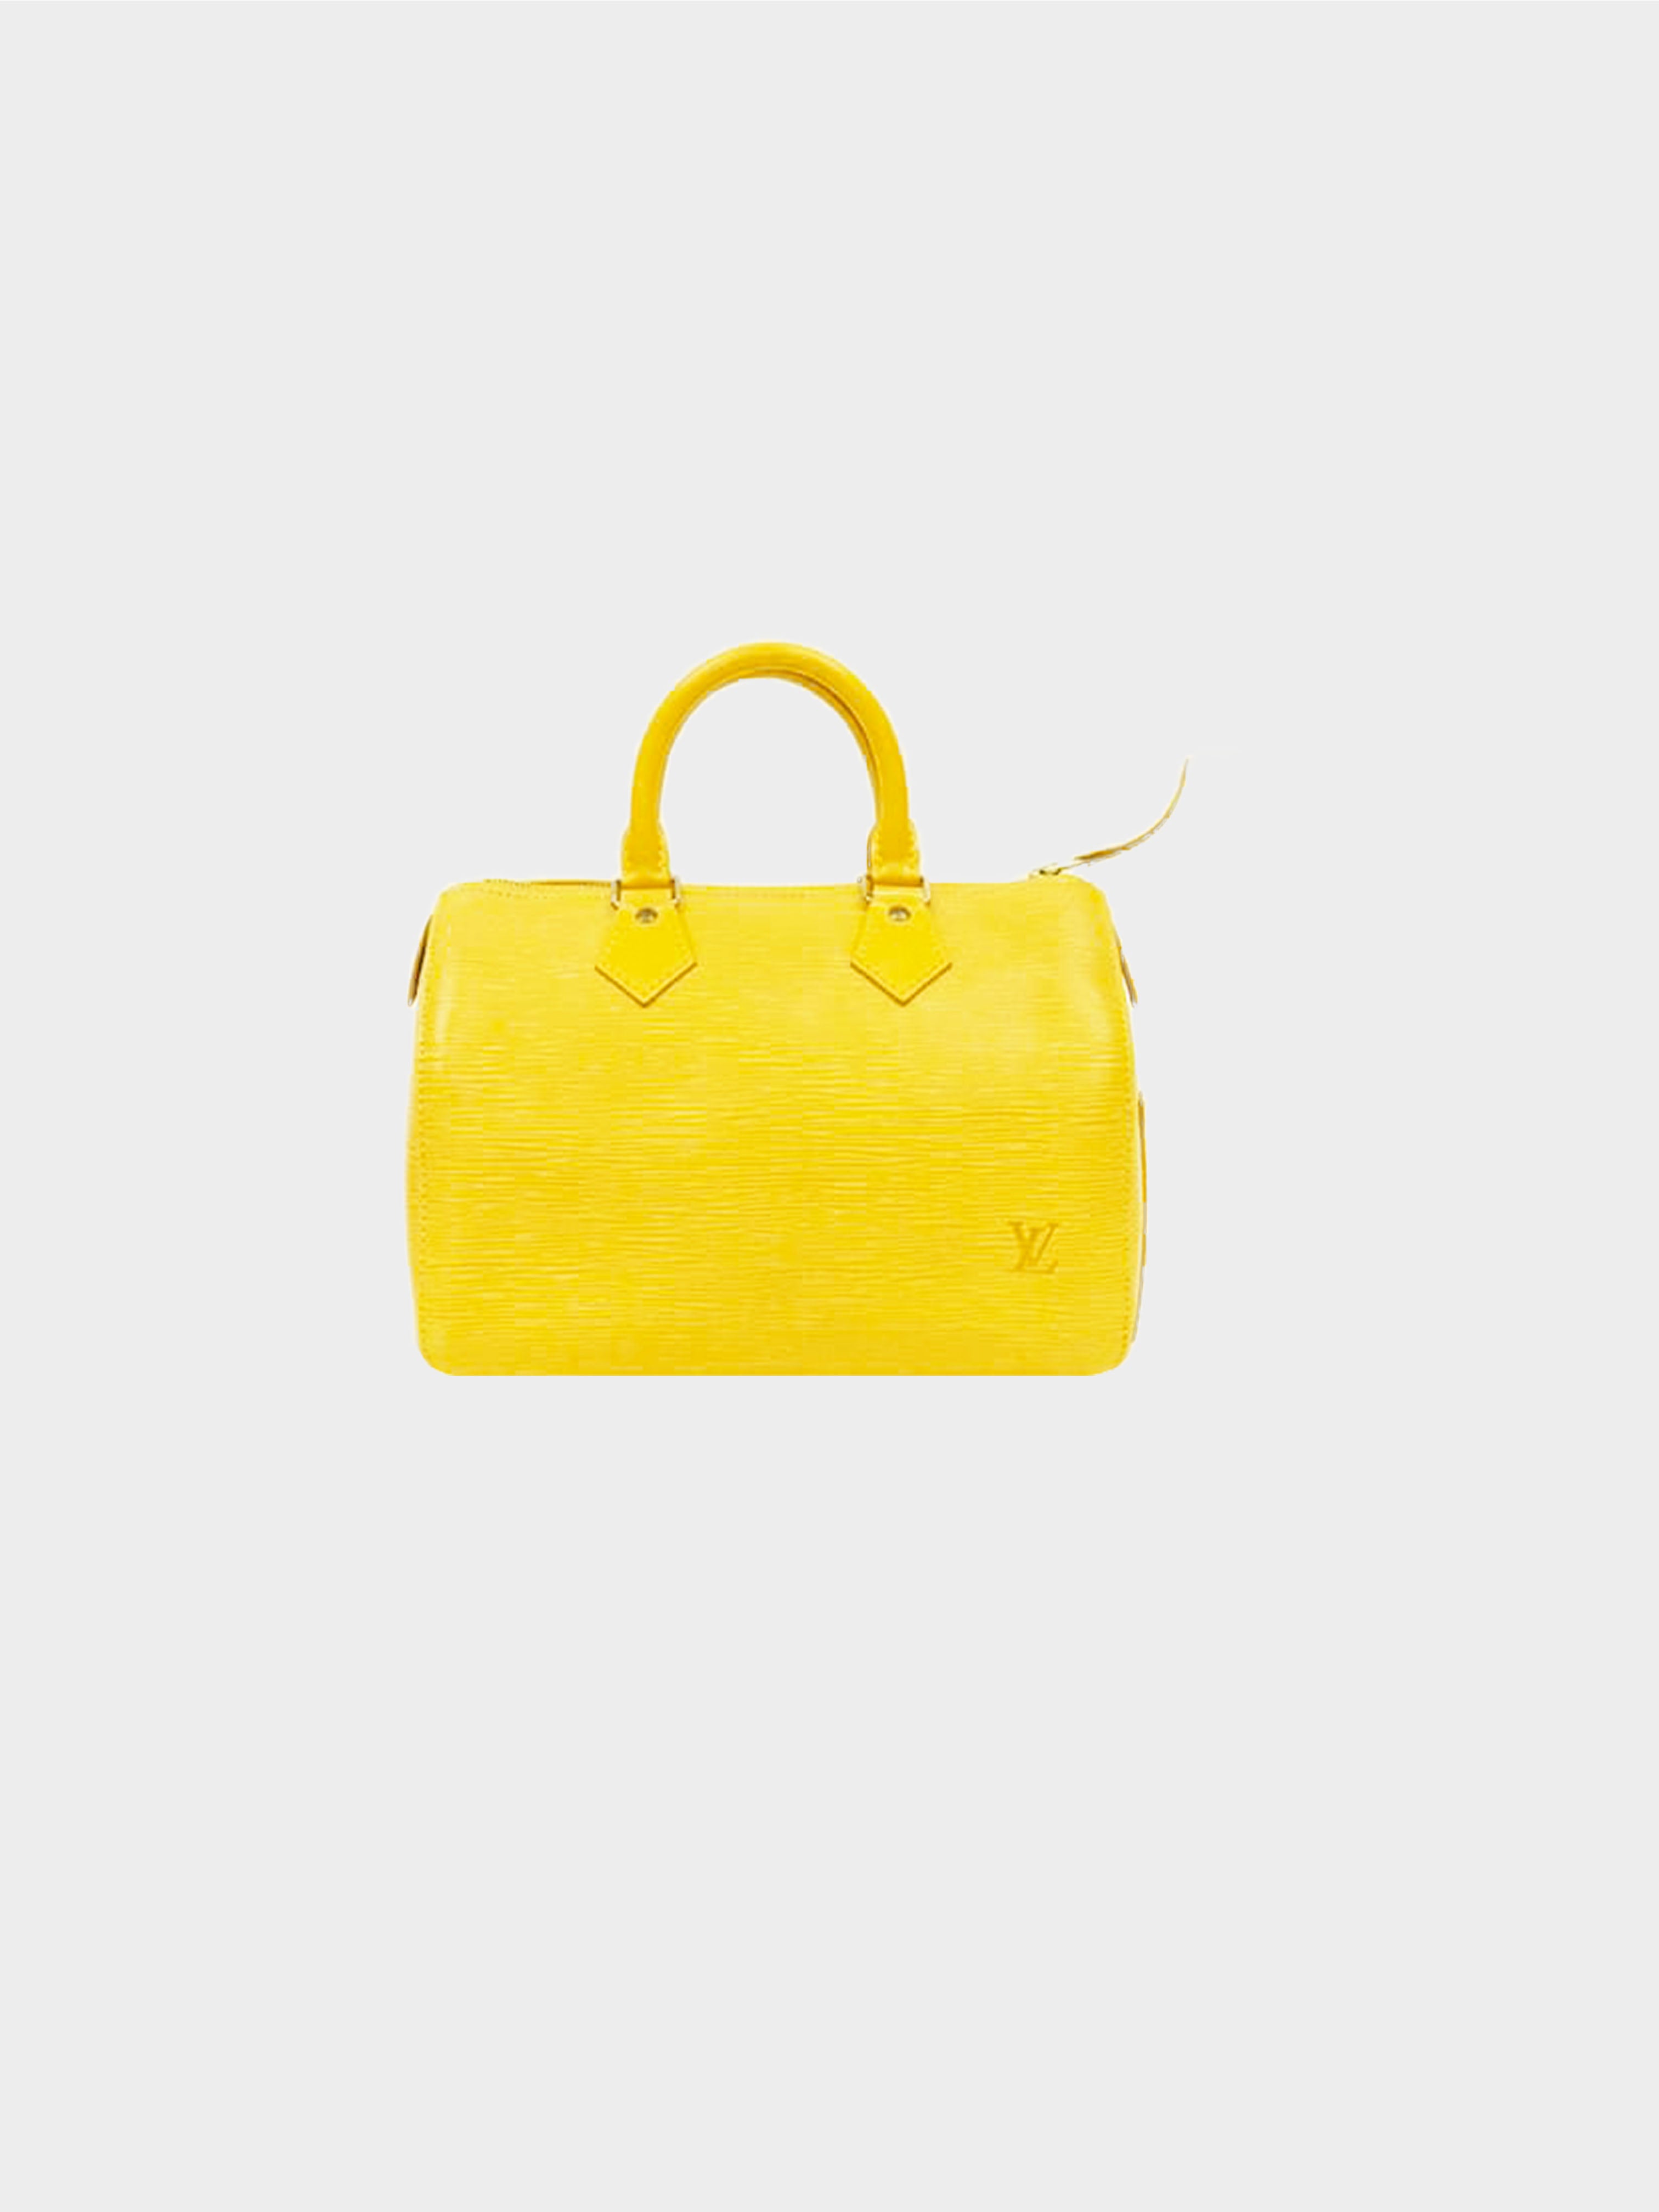 Authenticated Used Louis Vuitton Epi Pochette Accessoires 21 M52959 Handbag  Jaune 